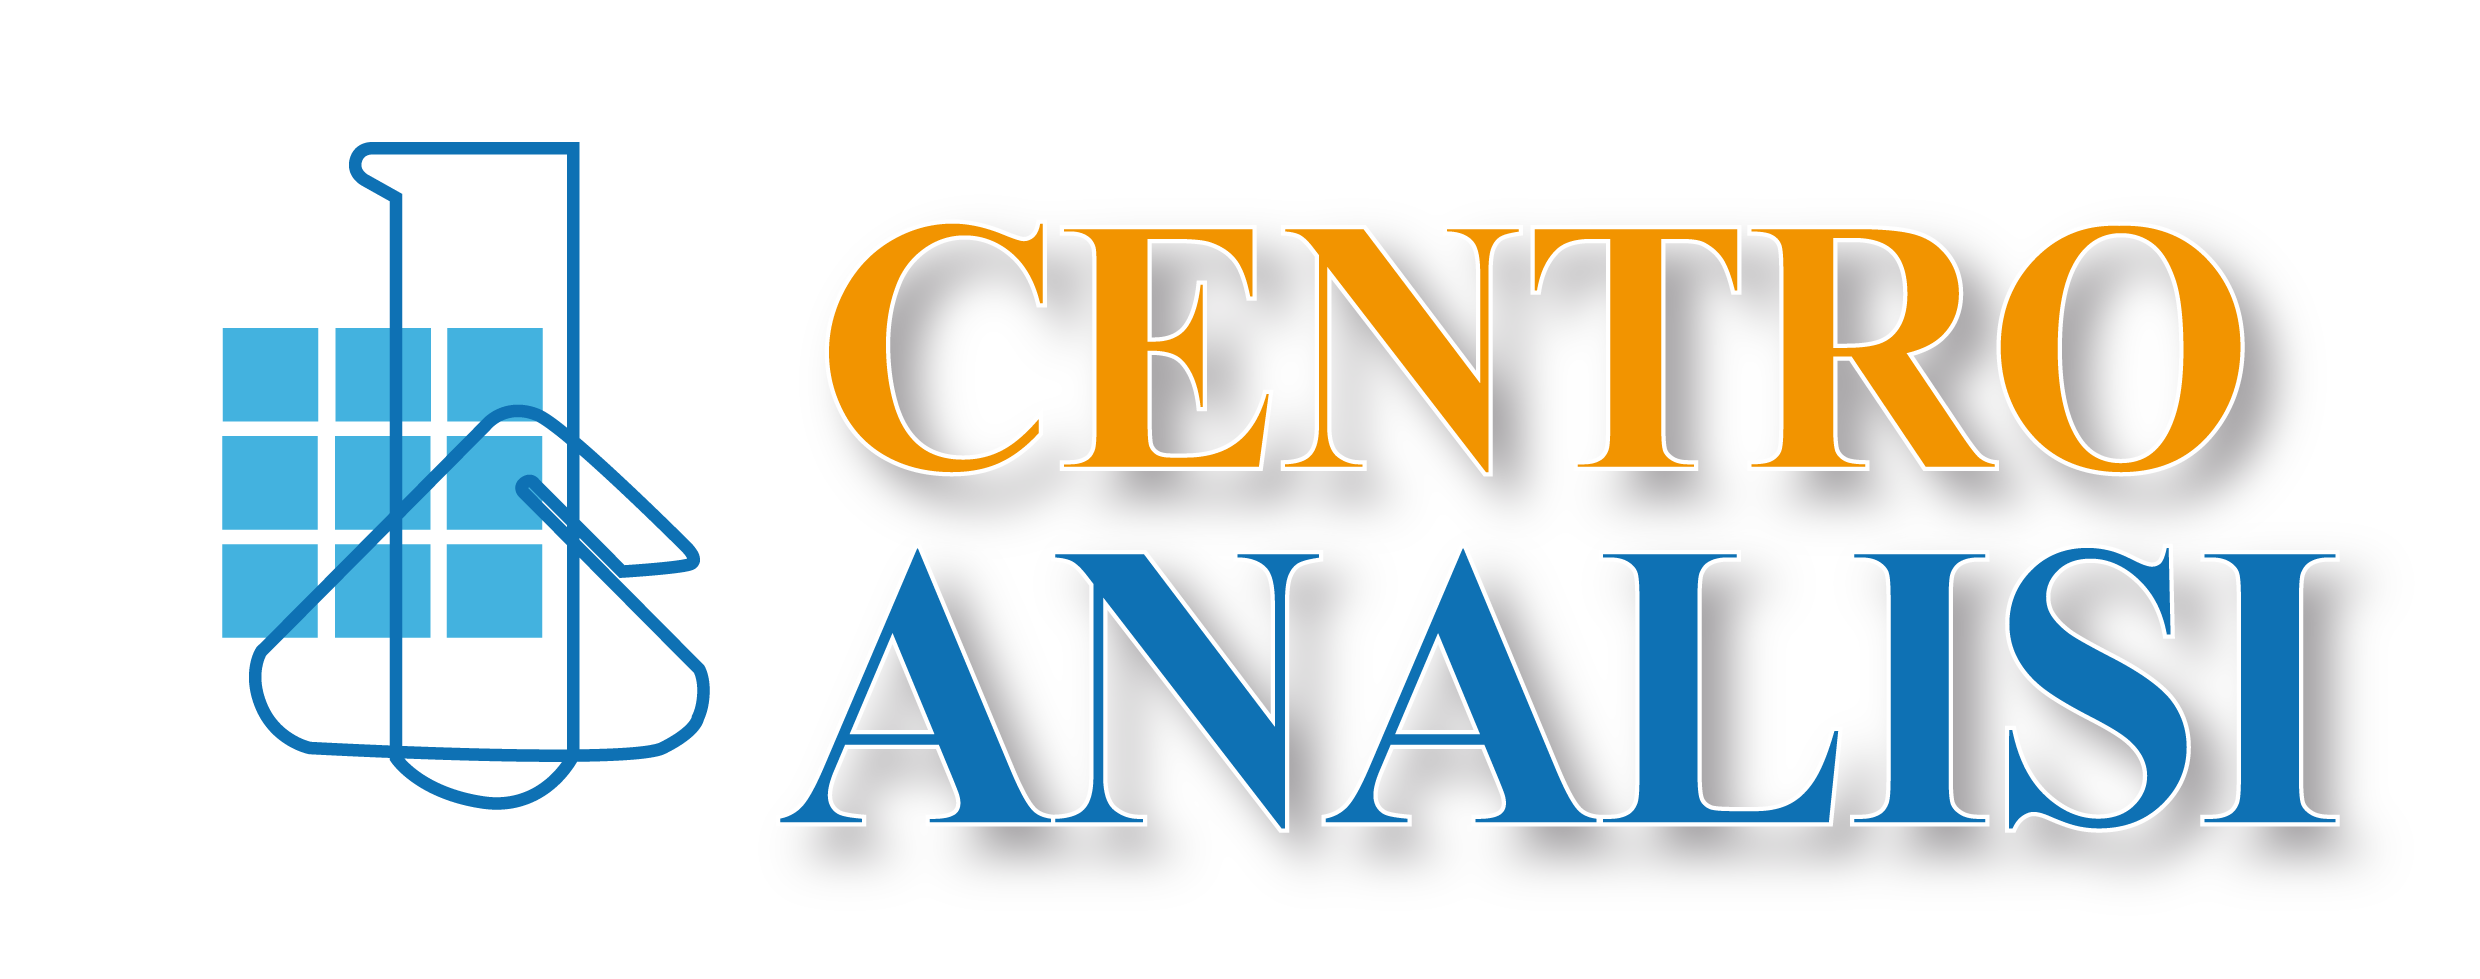 logo centro analisi